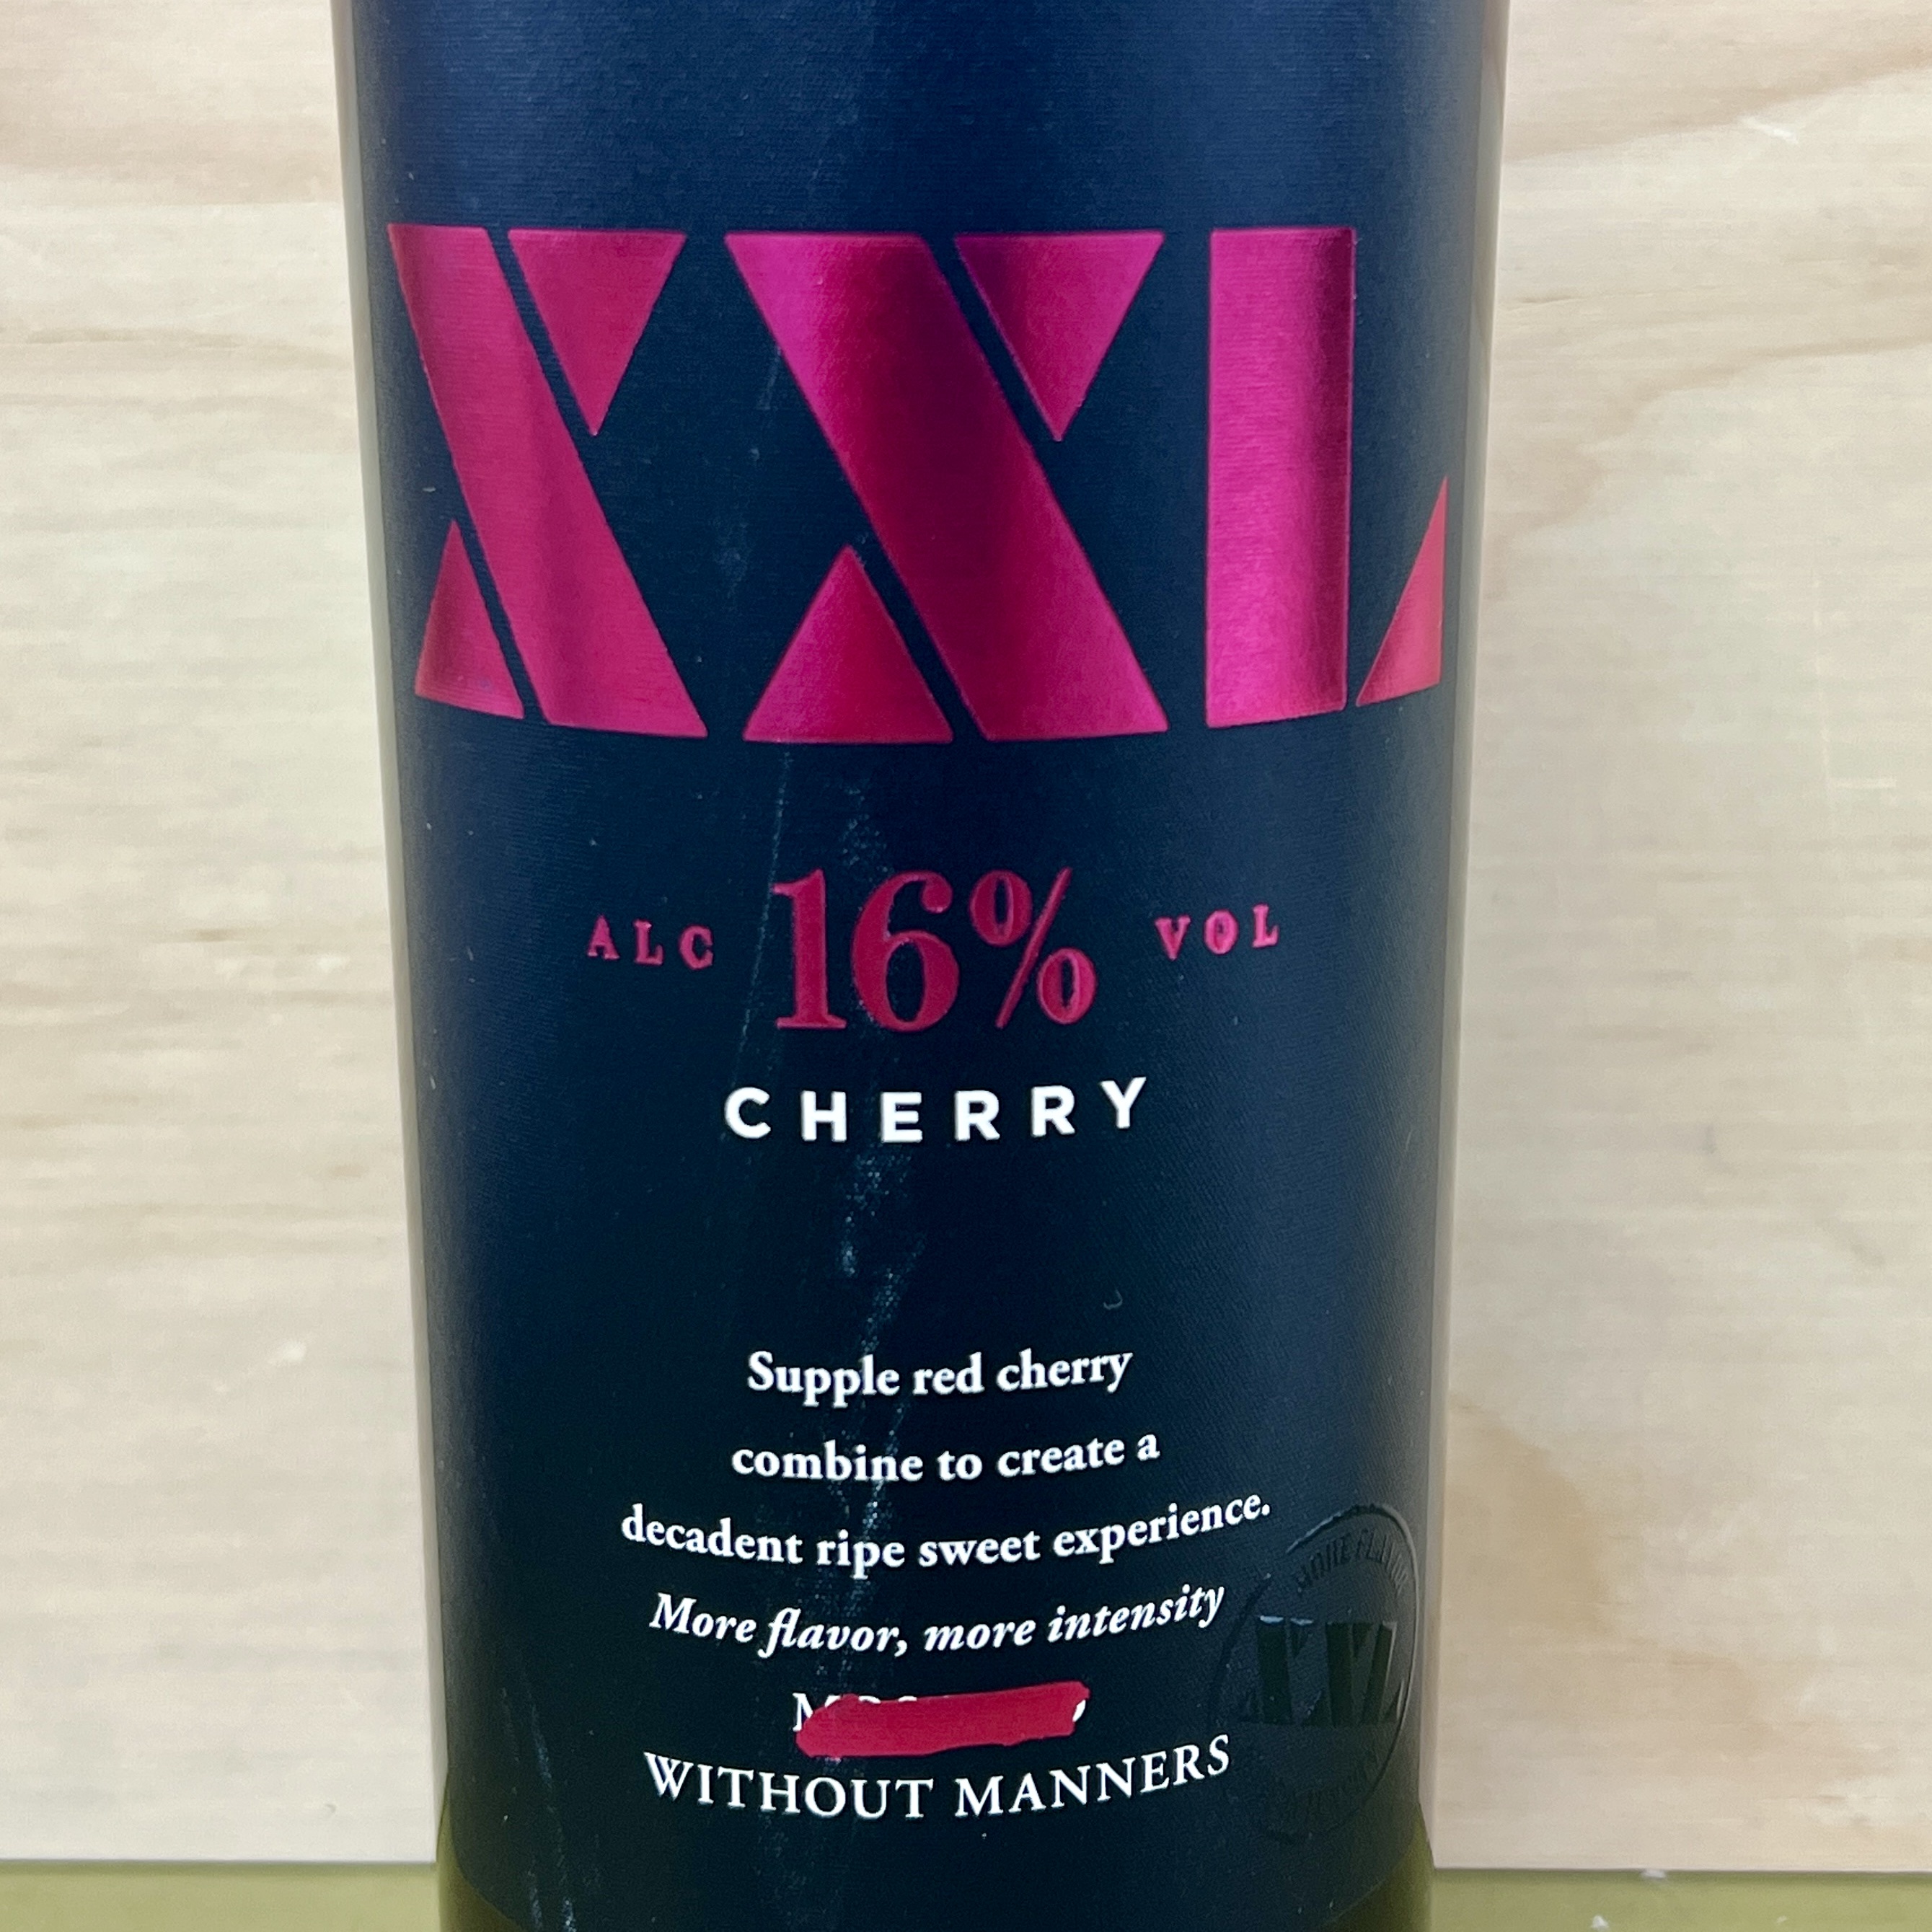 XXL Cherry wine